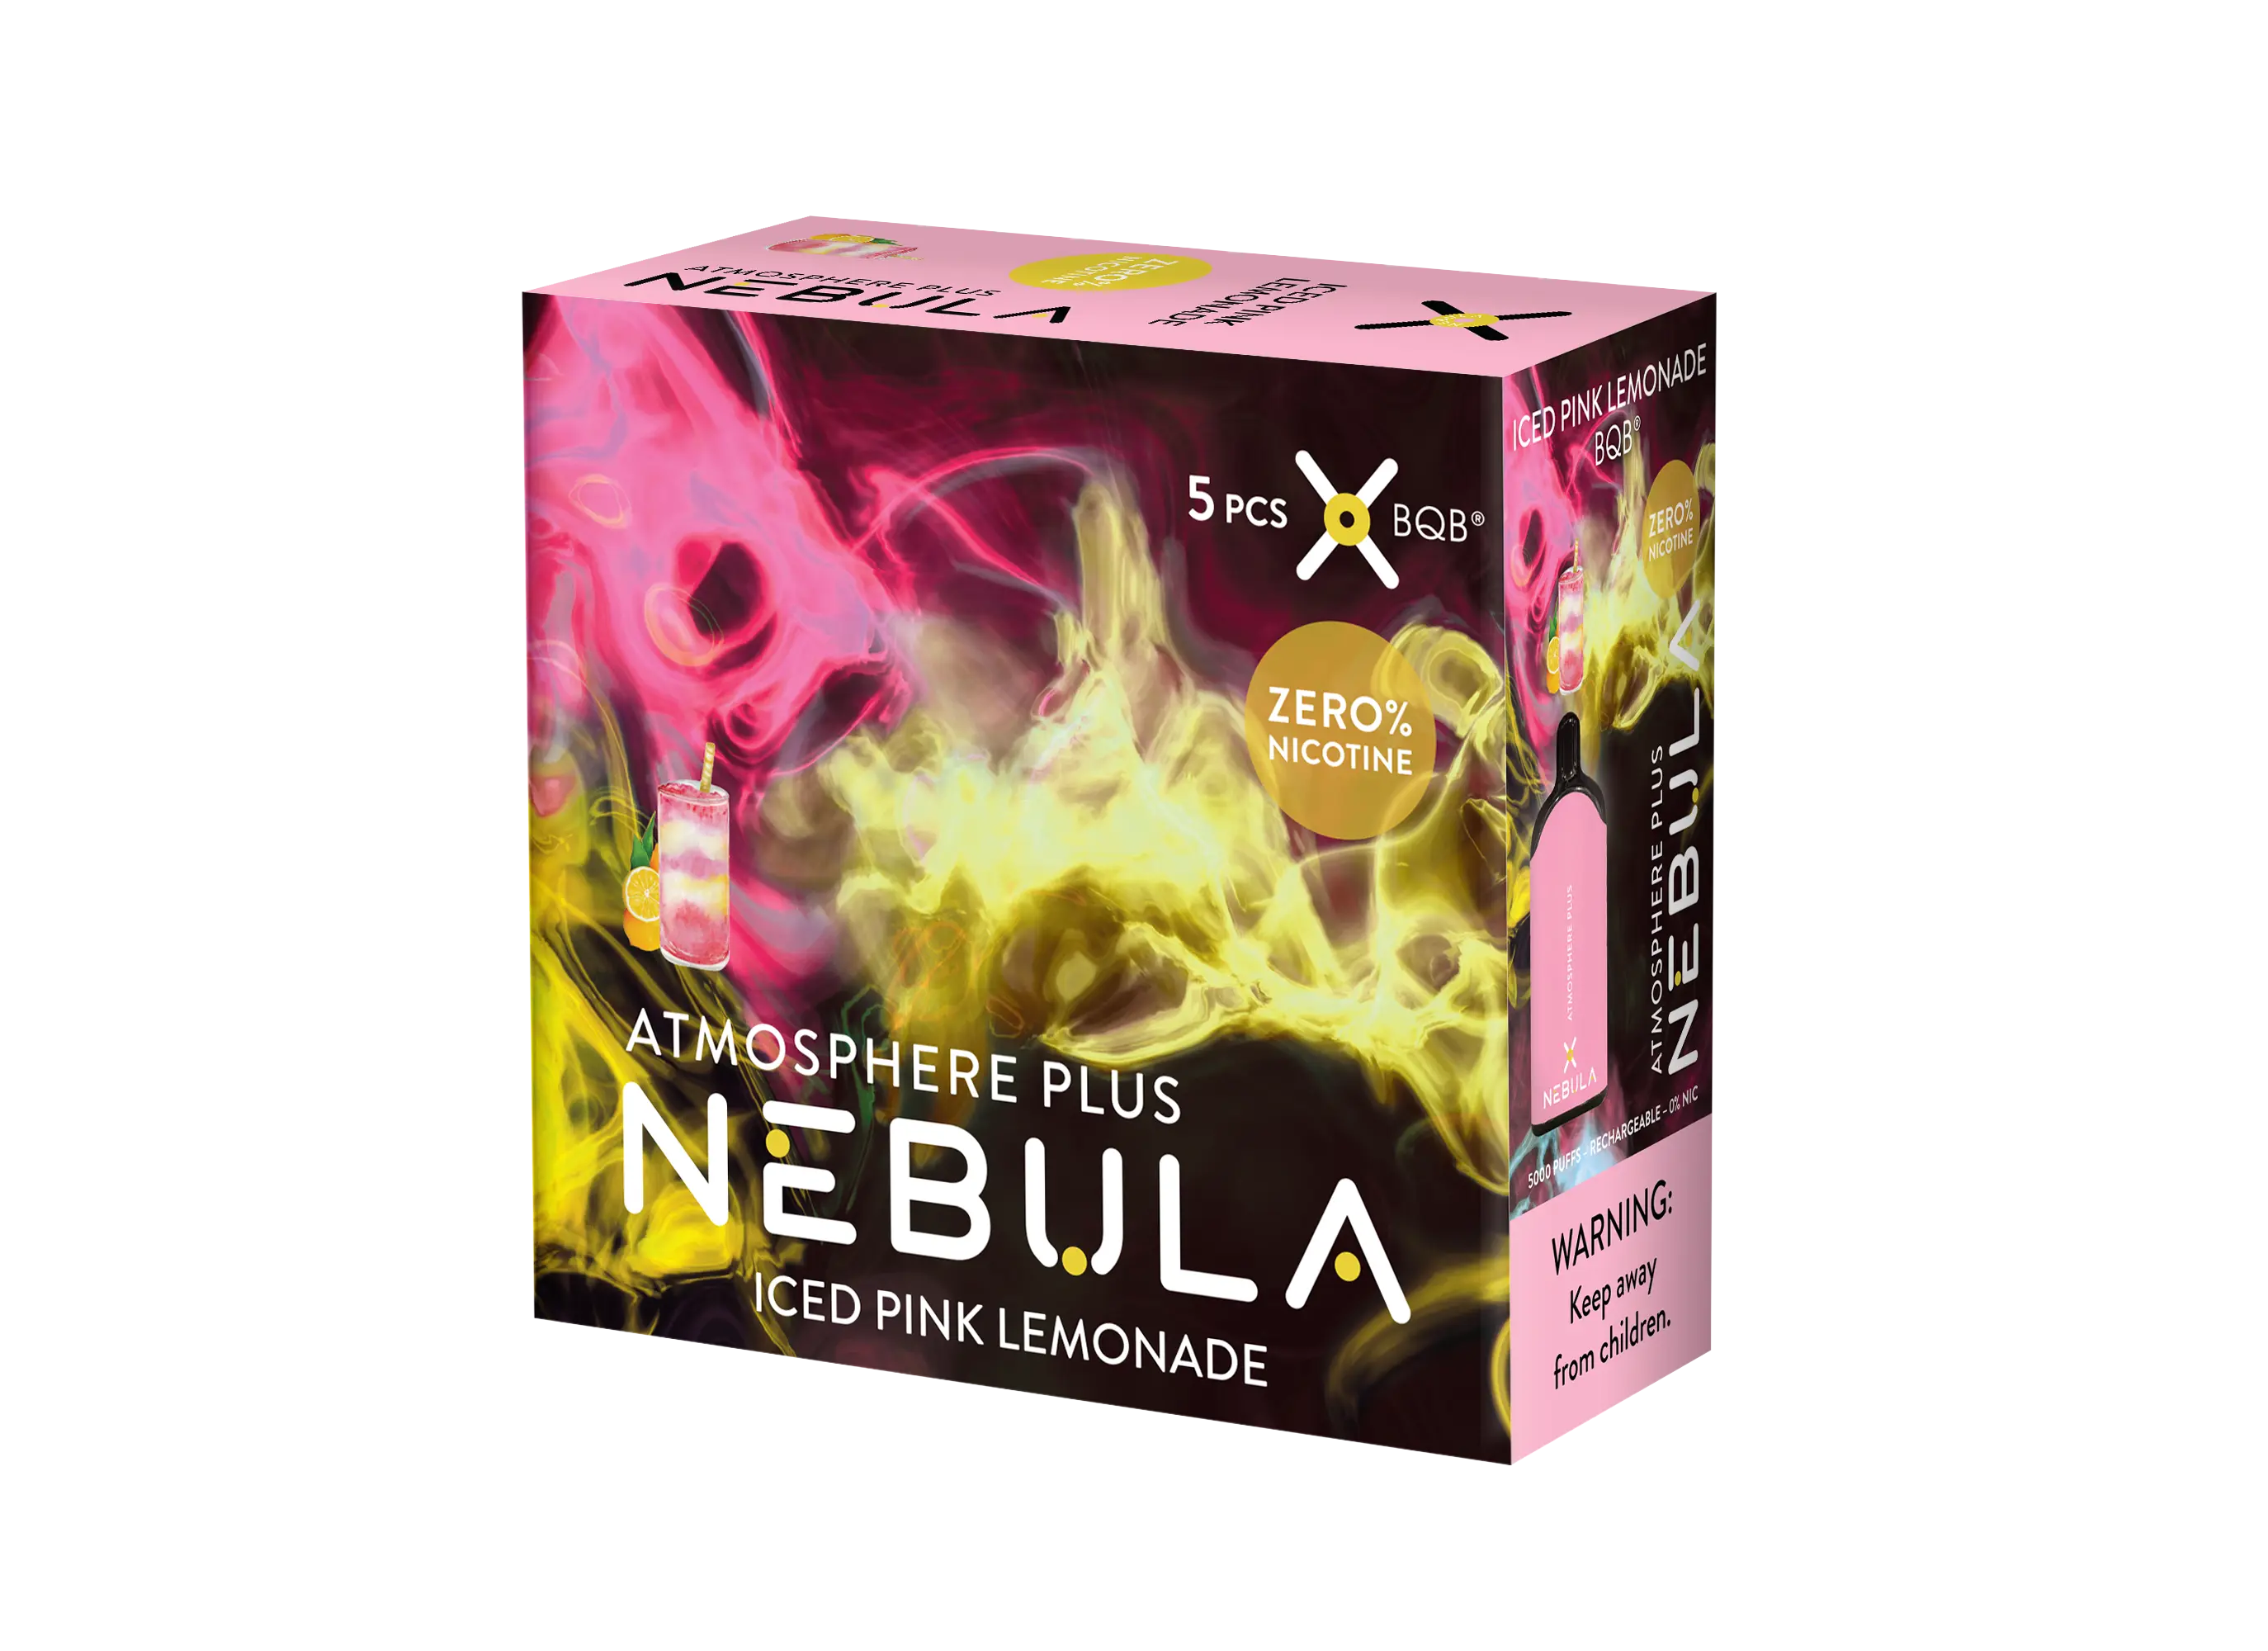 Nebula Atmosphere Plus 0% 5000 Puffs - Iced Pink Lemonade - B2B Nebula